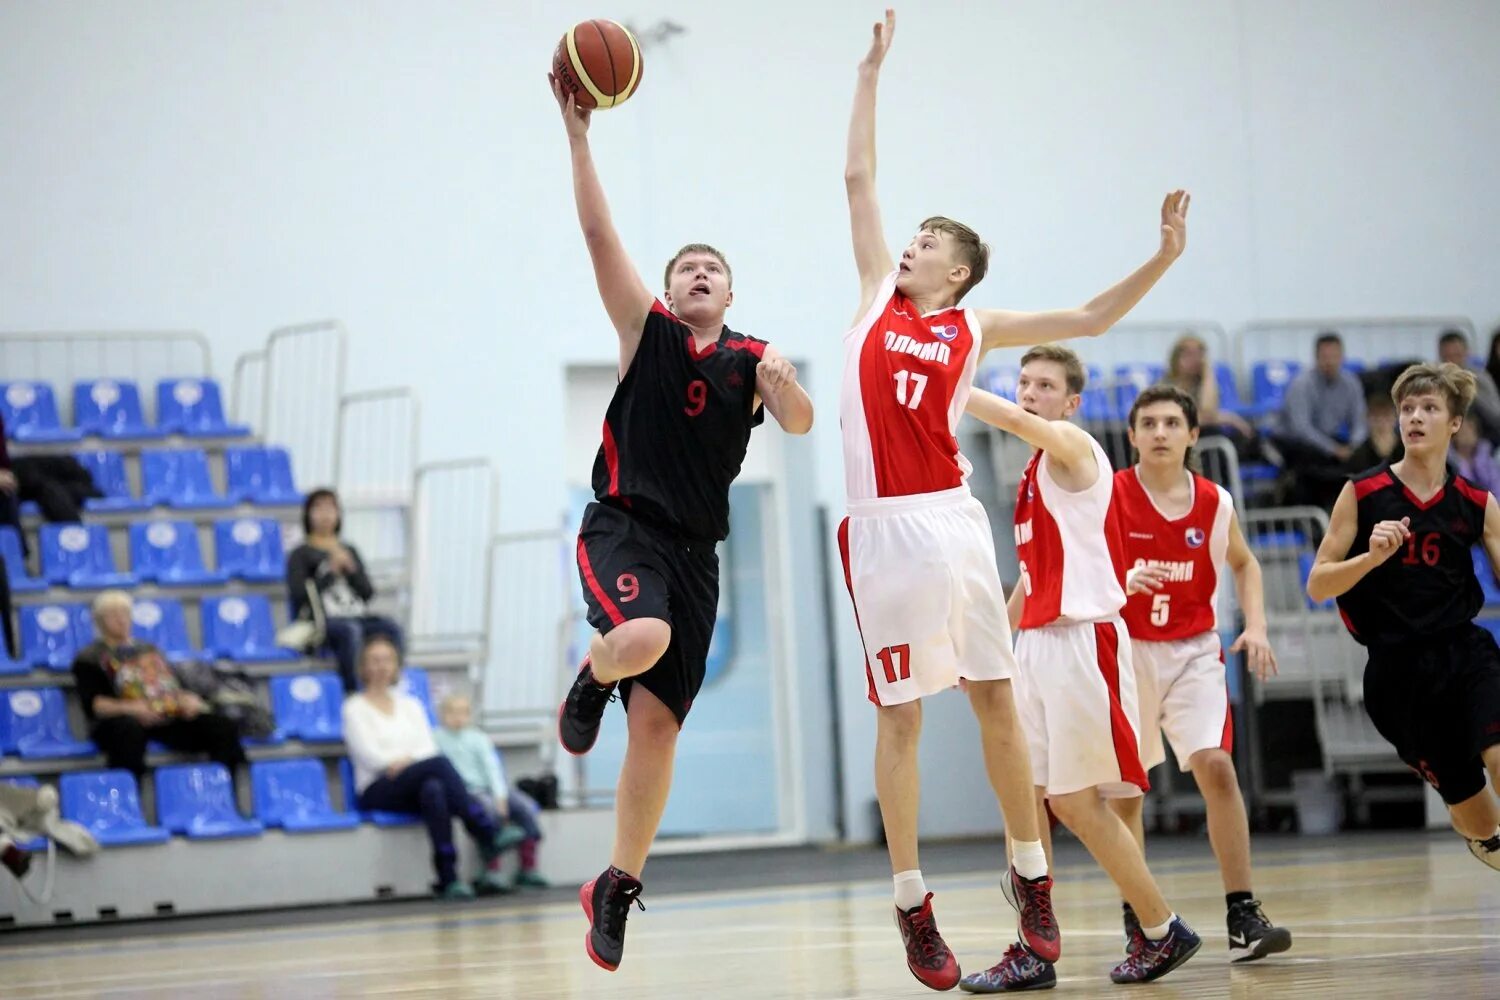 Первенство москвы по баскетболу 2013